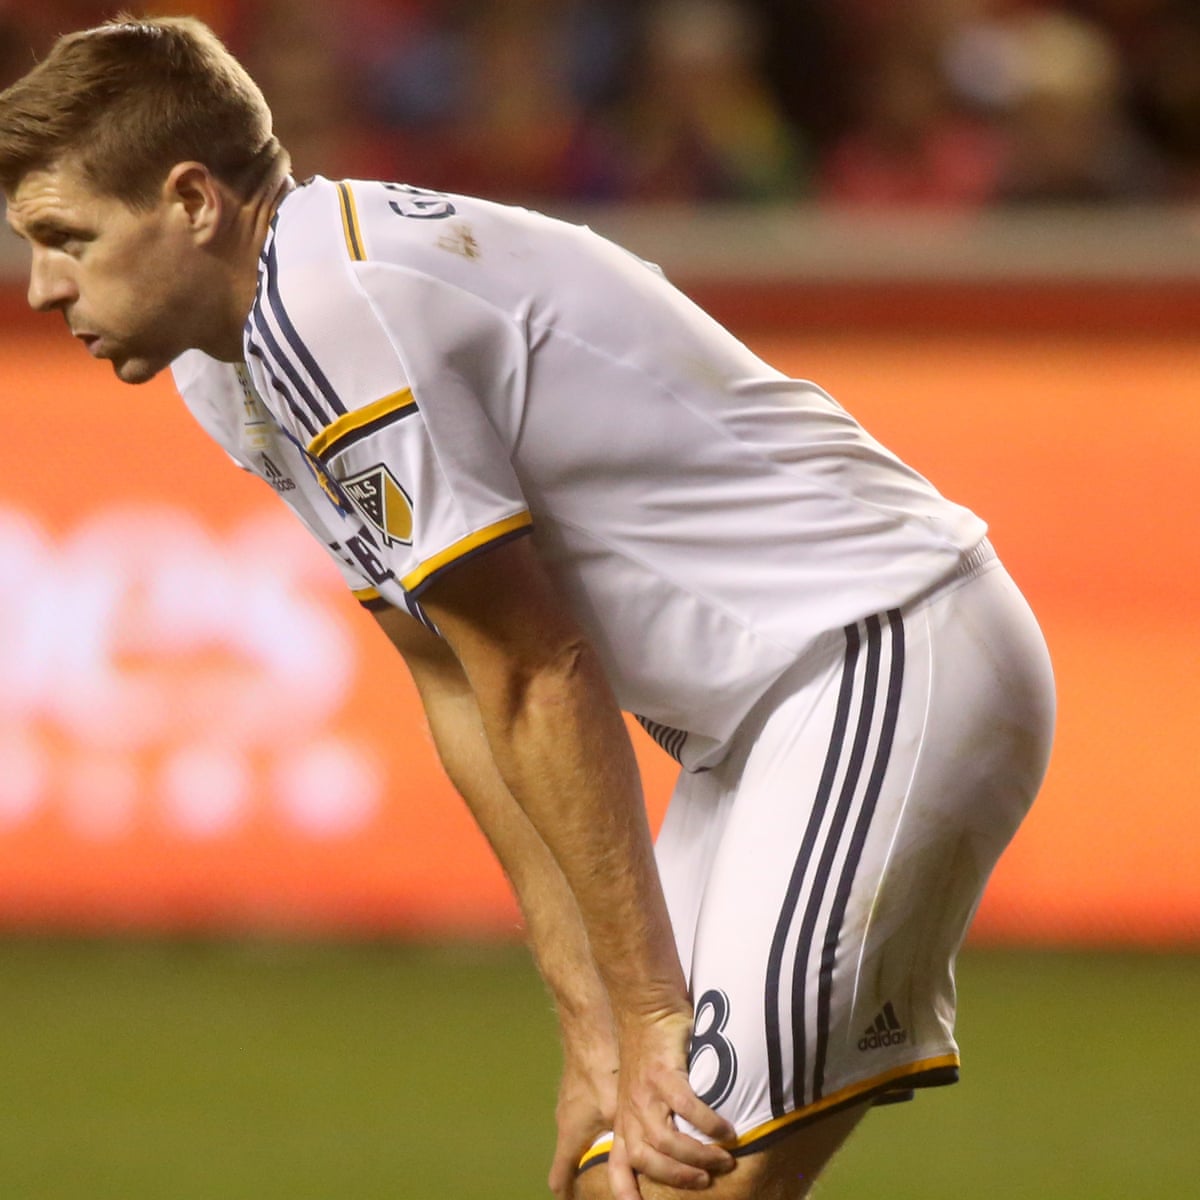 Steven Gerrard is an upsetting presence in LA midfield | MLS | The Guardian